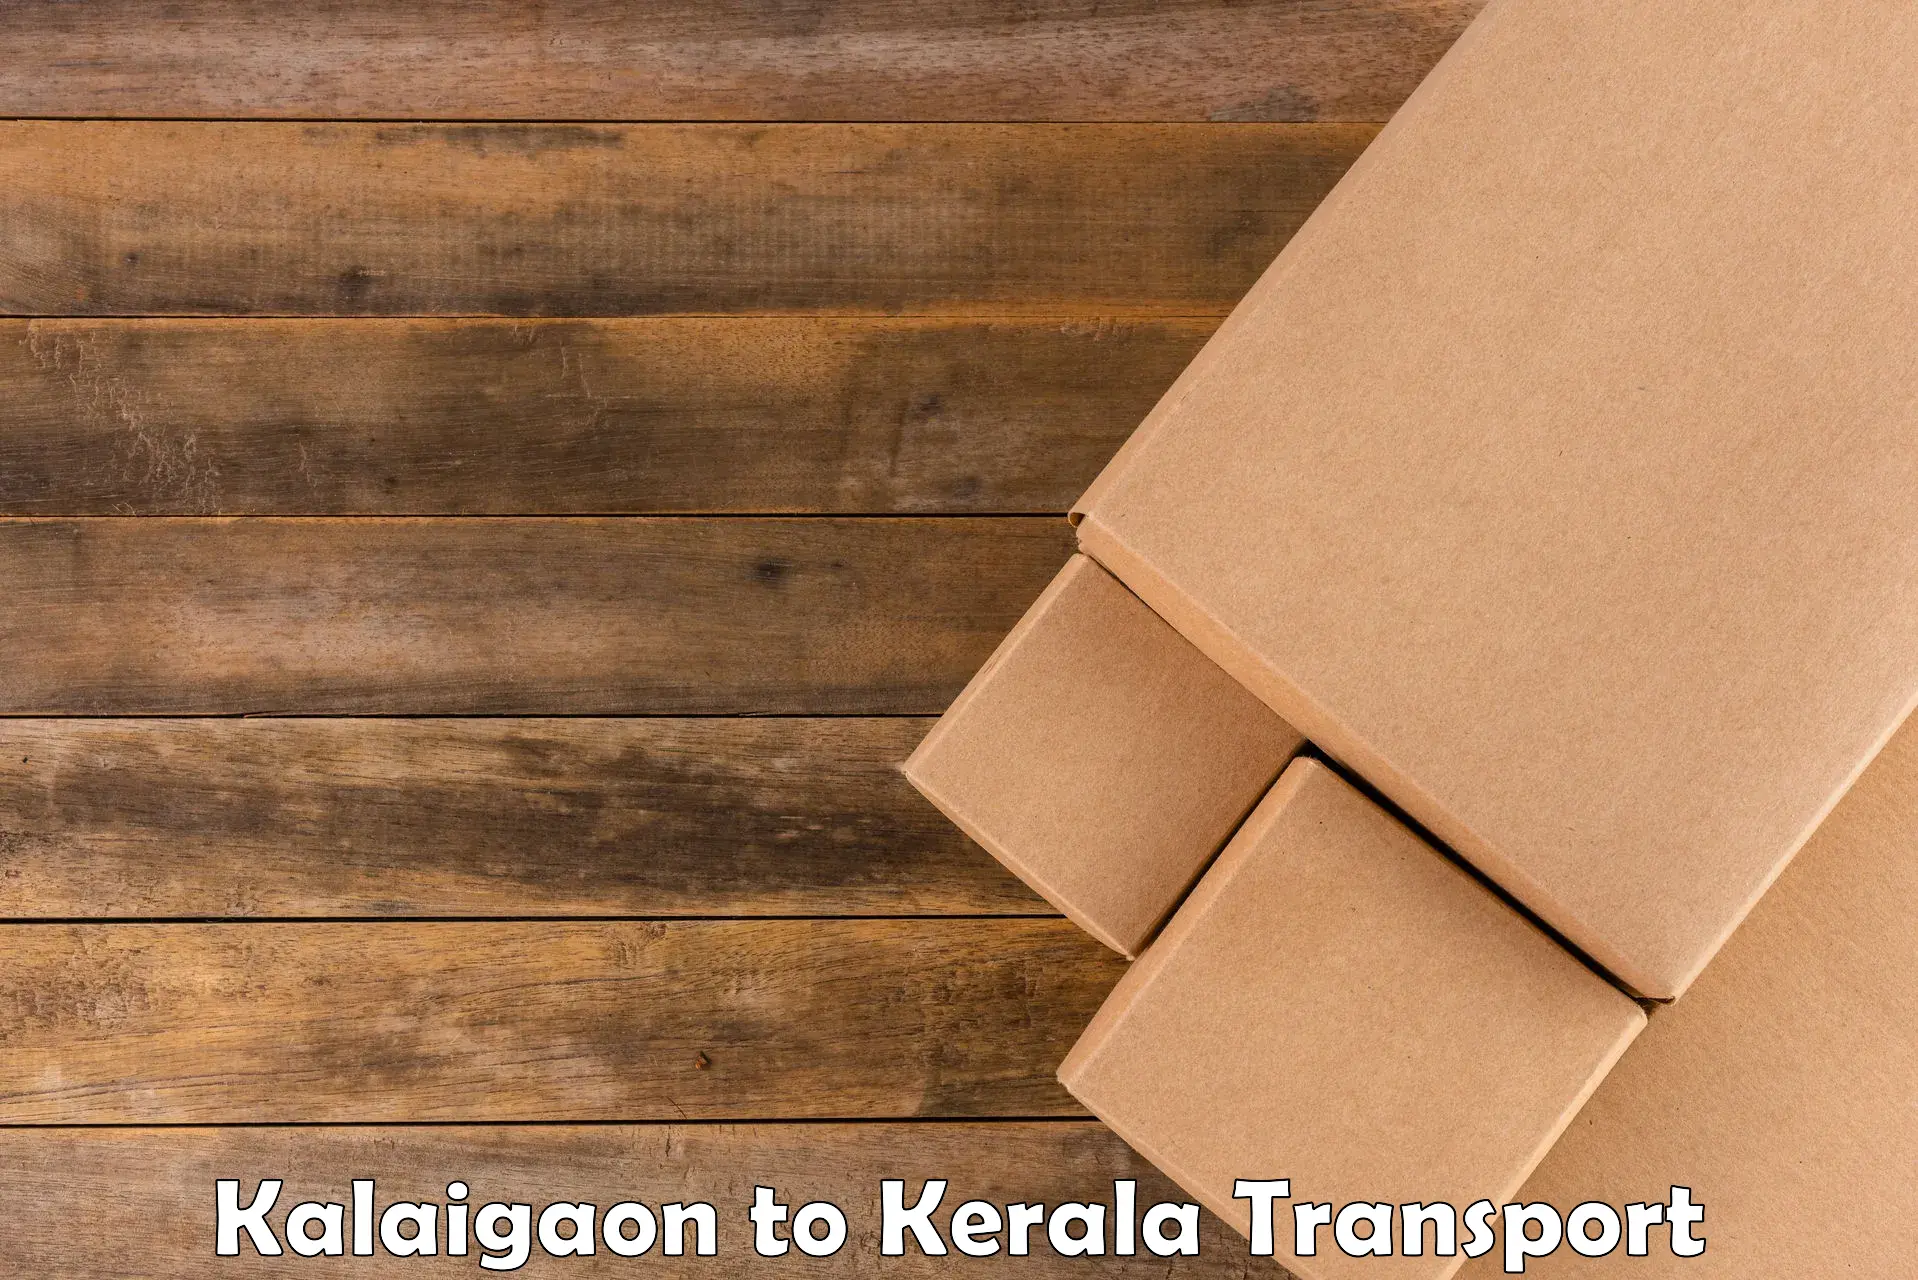 Interstate transport services Kalaigaon to Manjeri Kla